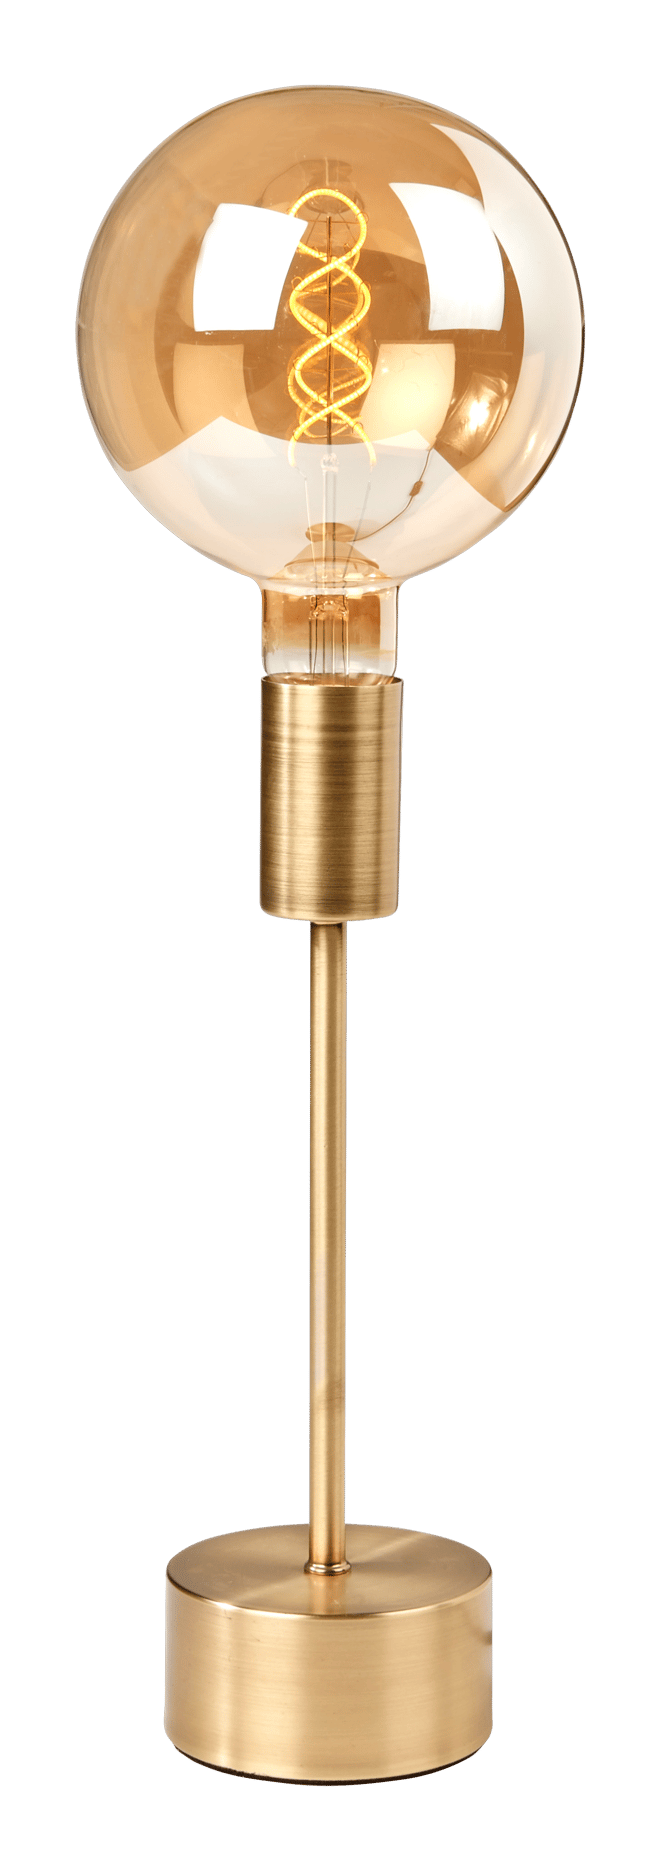 SHAIN Lampe de table doré H 32,5 cm - Ø 10 cm